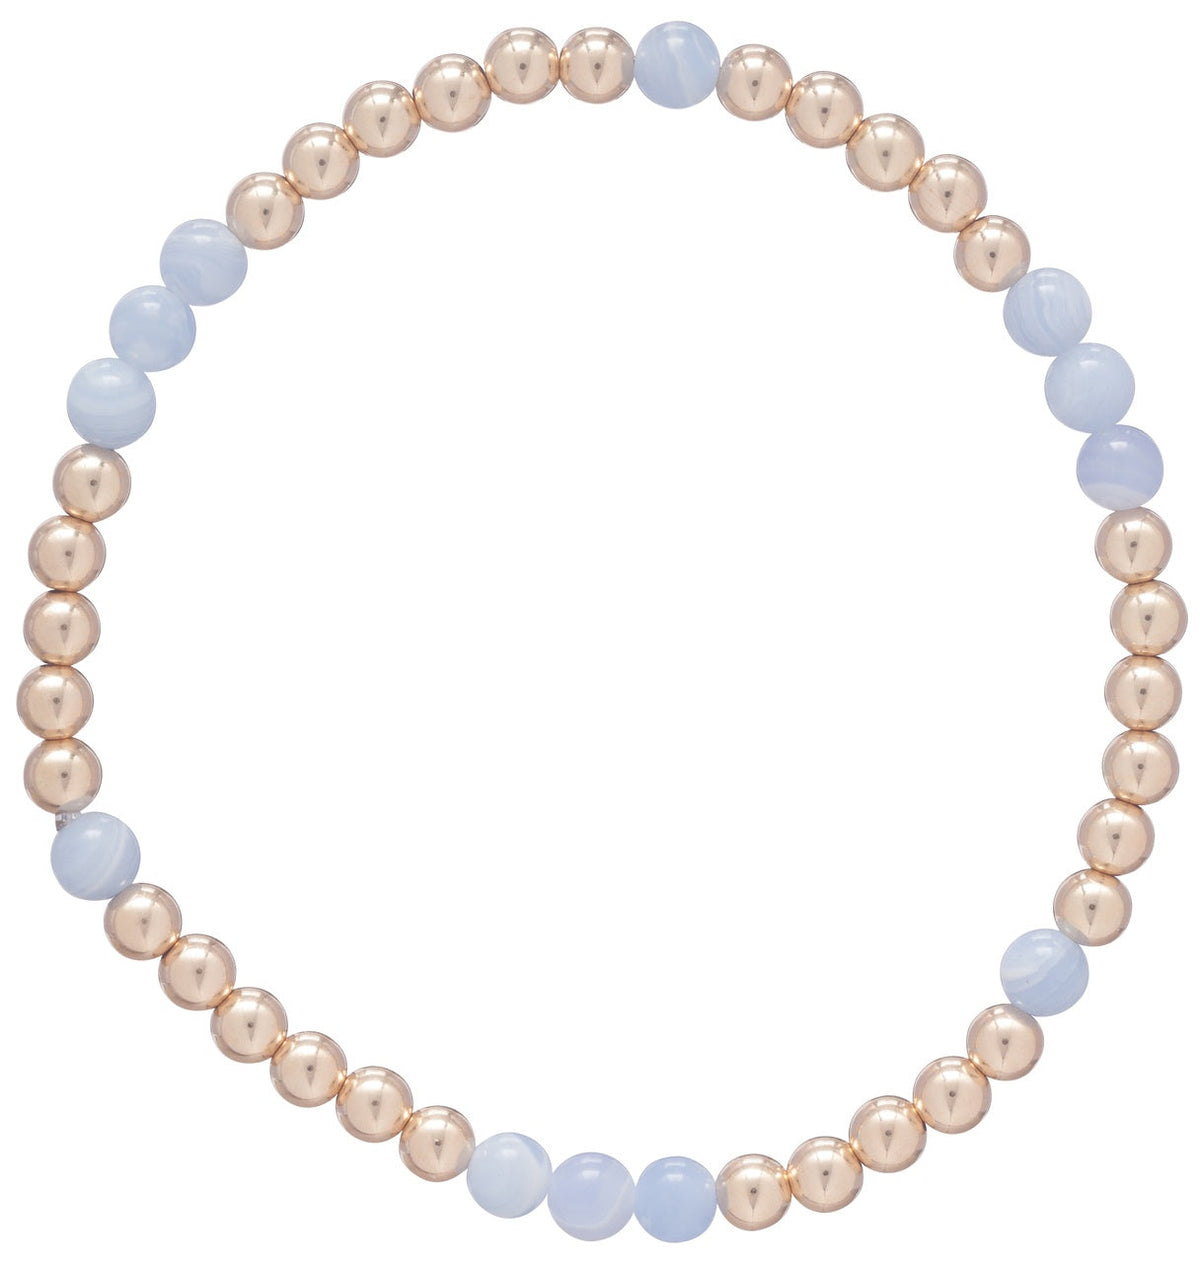 Enewton Design Purpose Blue Lace Agate Bracelet